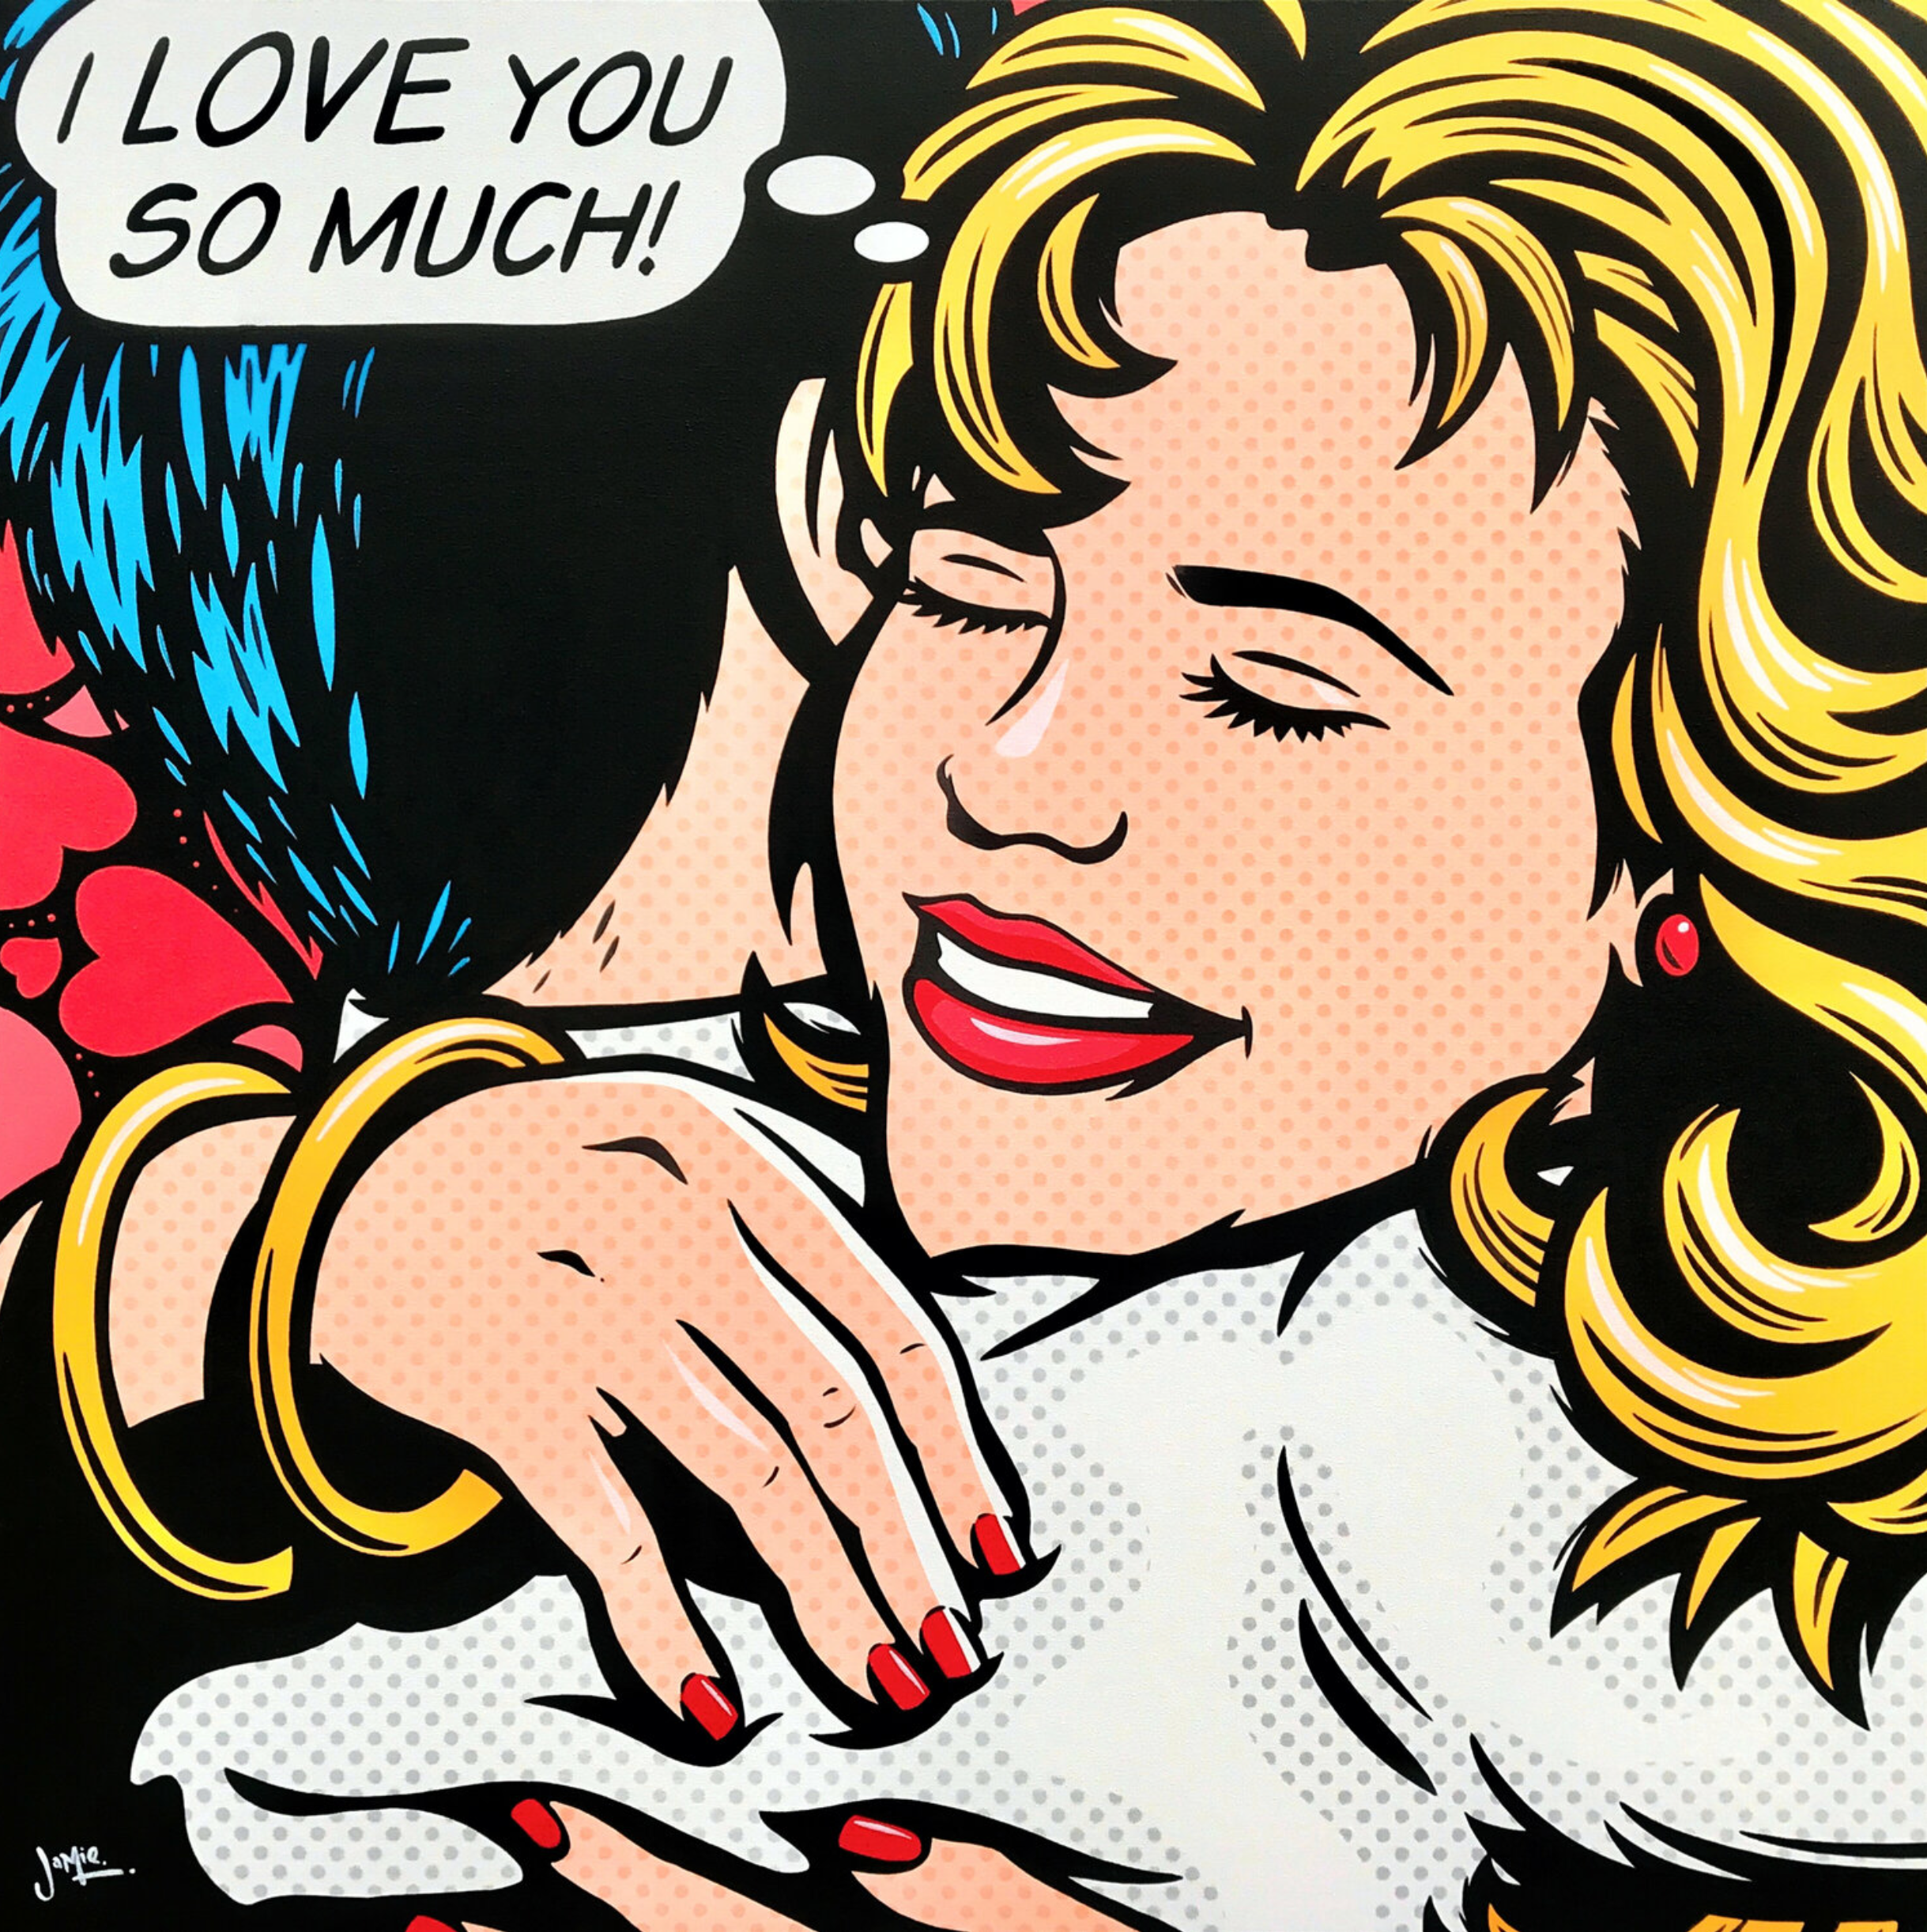 Peinture pop art "I Love You" de Jamie Lee, style bande dessinée.  Design original, pop art peint à la main. Un jeune couple enlacé avec amour et une bulle de pensée - "Je t'aime tellement". Mais qui le pense ? Elle, lui, peut-être les deux ?